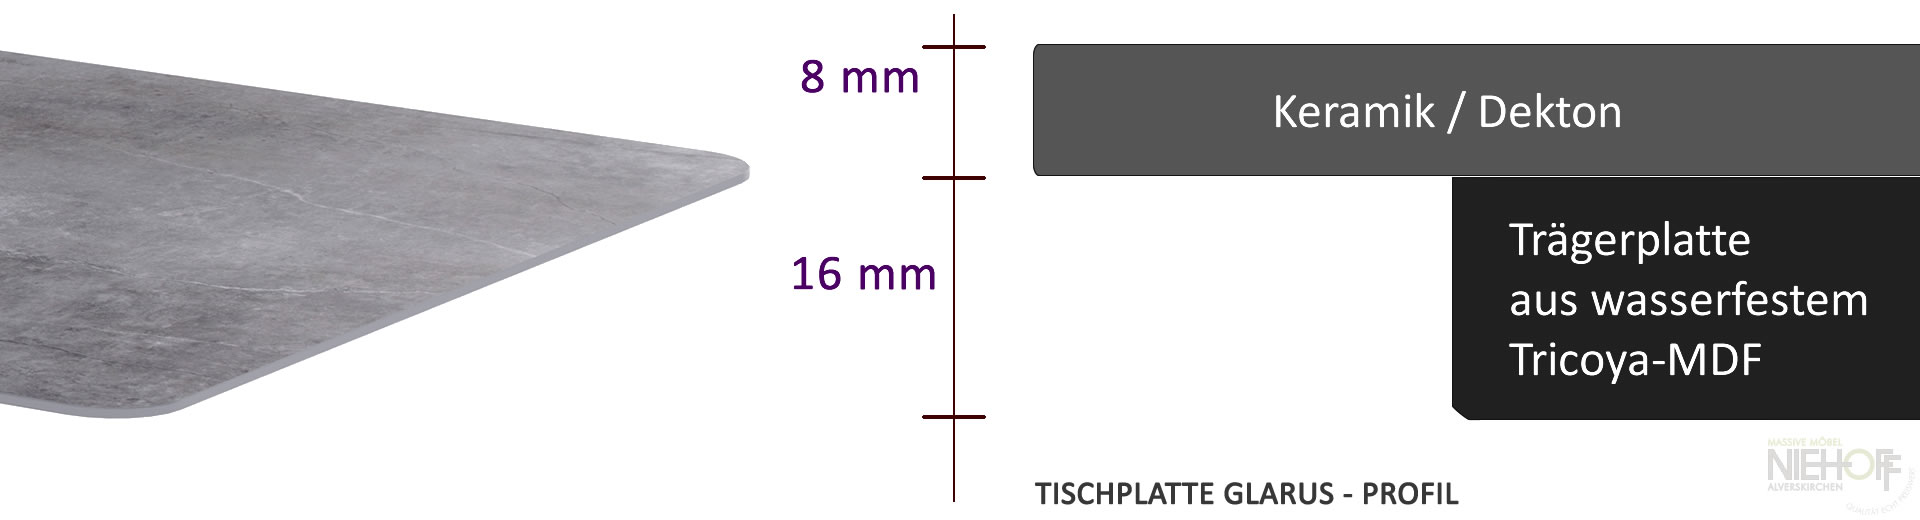 Glarus Keramik, Dekton Tische. Profil Tischplatte